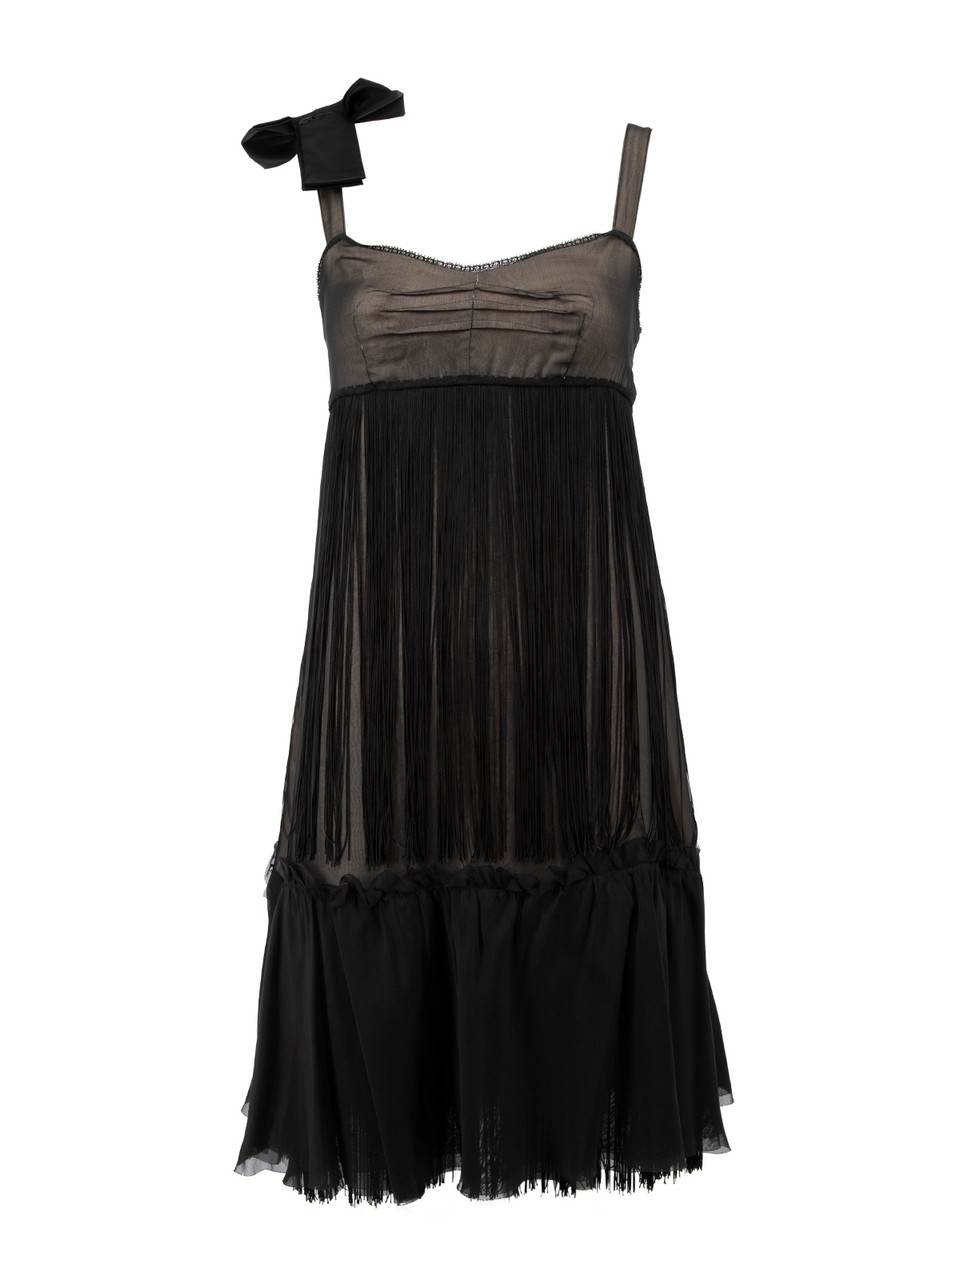 Dolce & Gabbana Black Silk Bow Accent Tassel Mini Dress